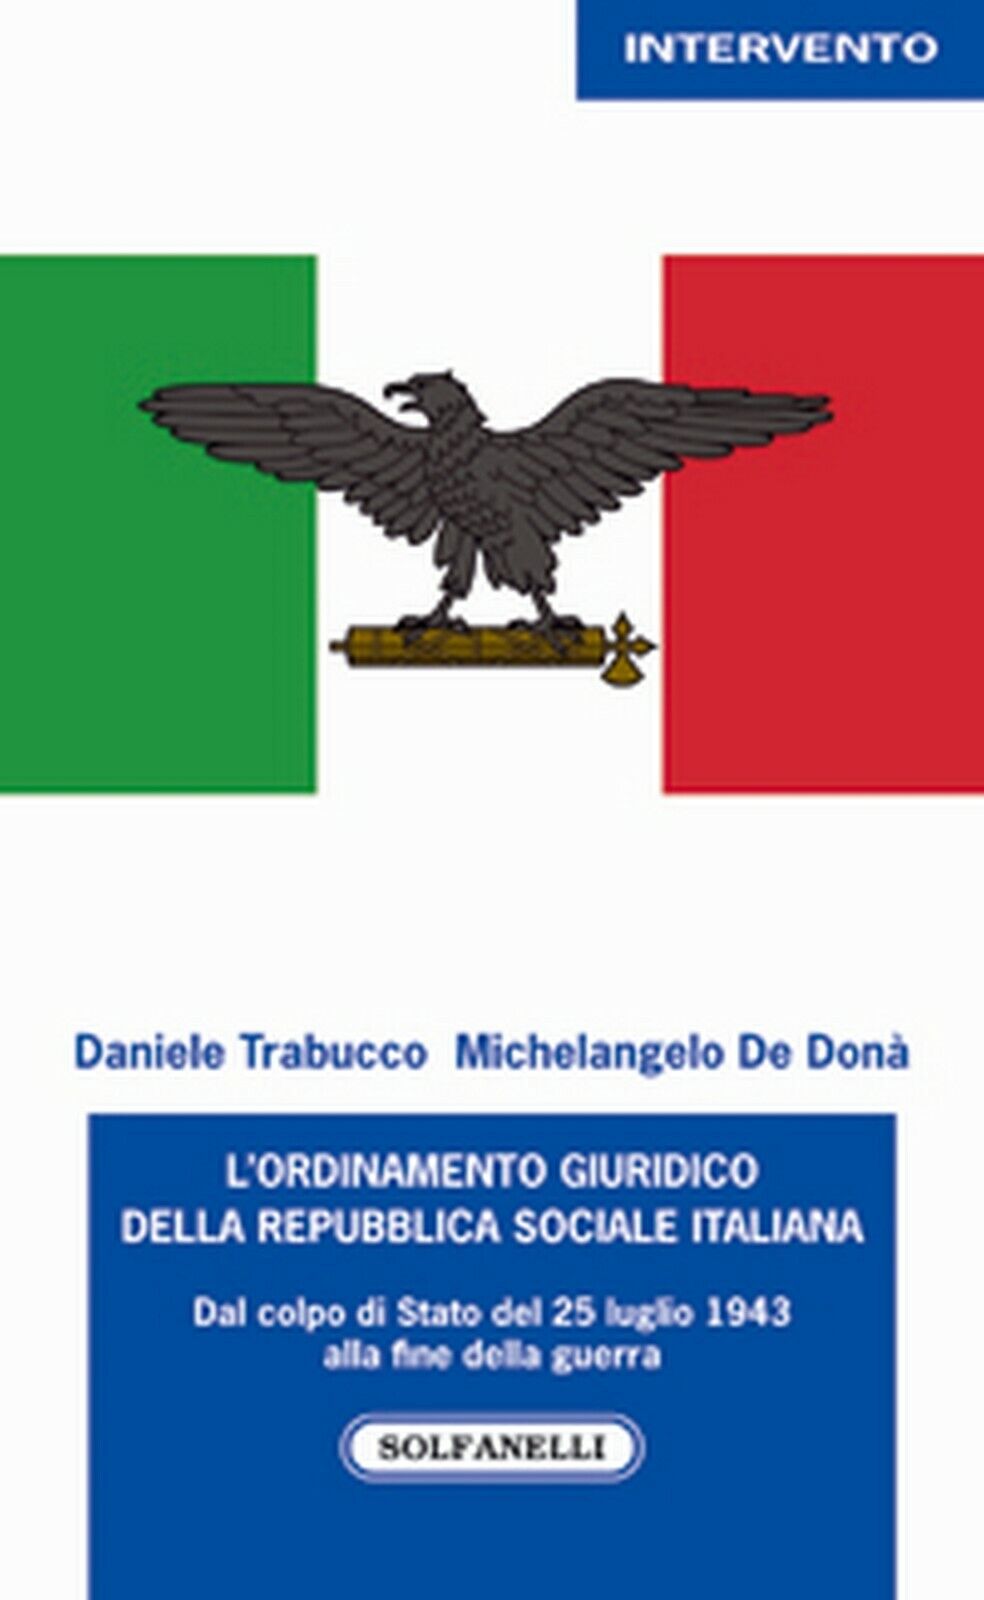 L'ORDINAMENTO GIURIDICO DELLA REPUBBLICA SOCIALE ITALIANA